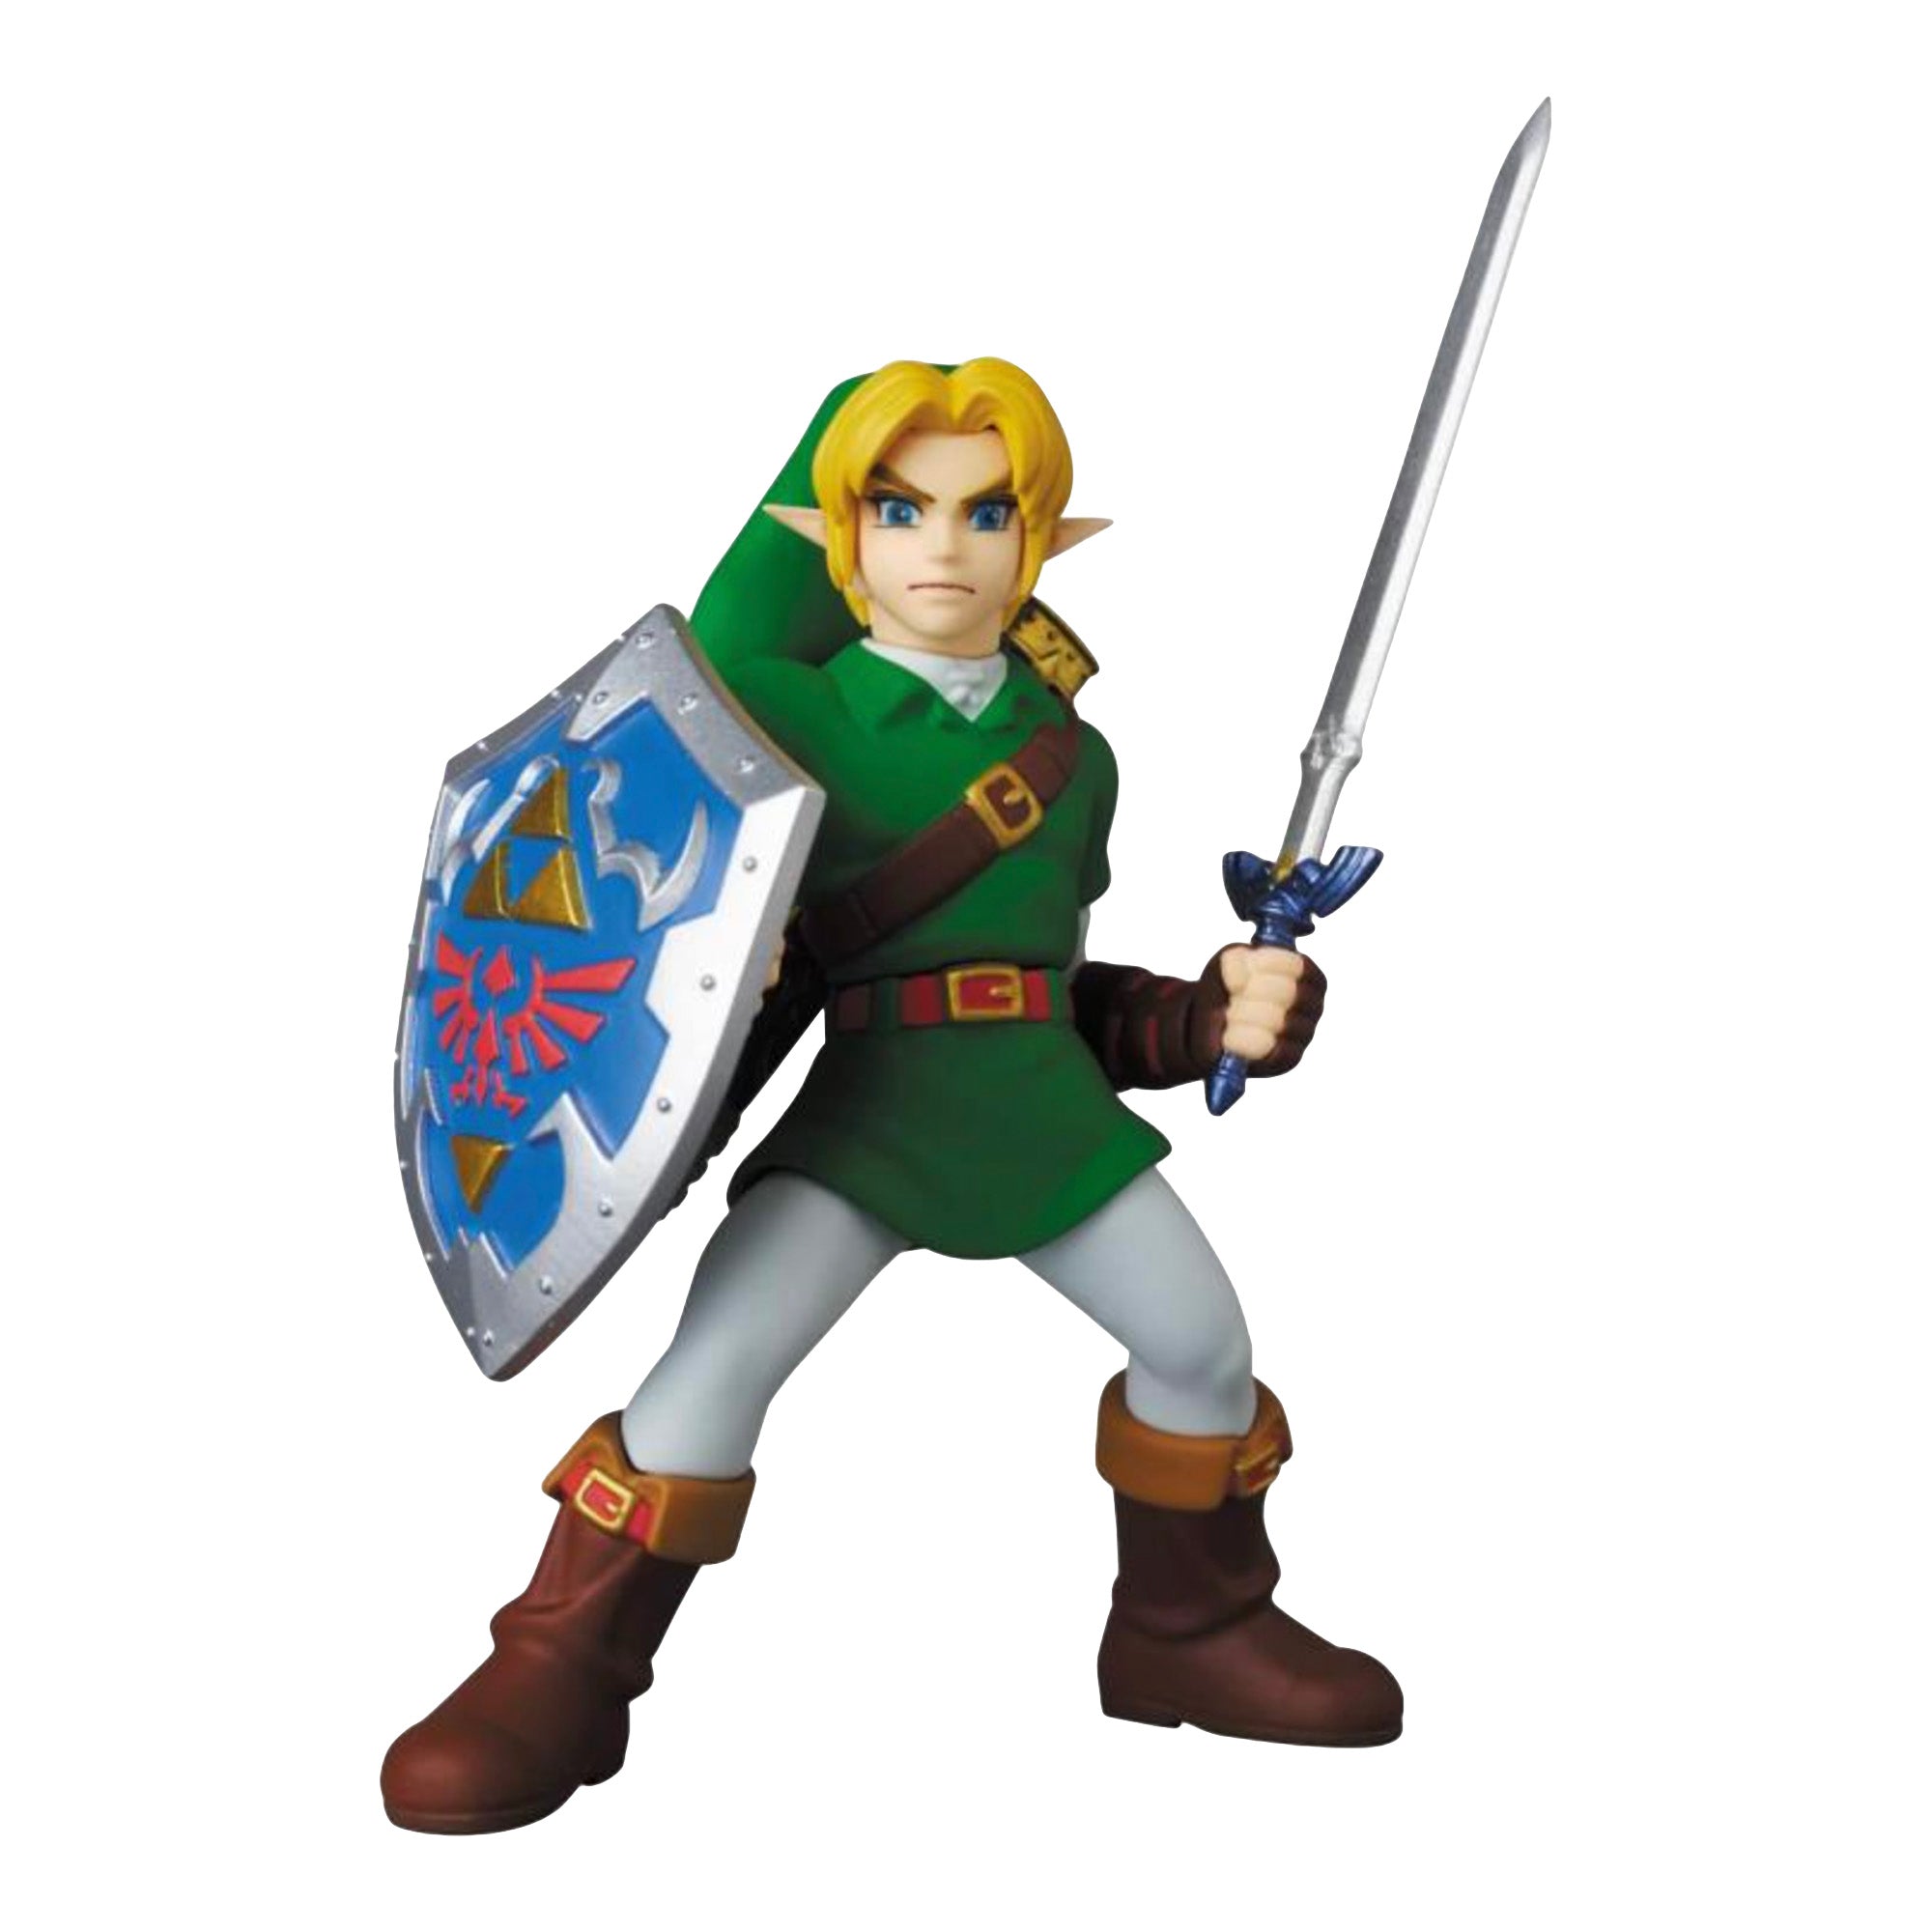 MEDICOM TOY x Nintendo: UDF - The Legend of Zelda Ocarina of Time